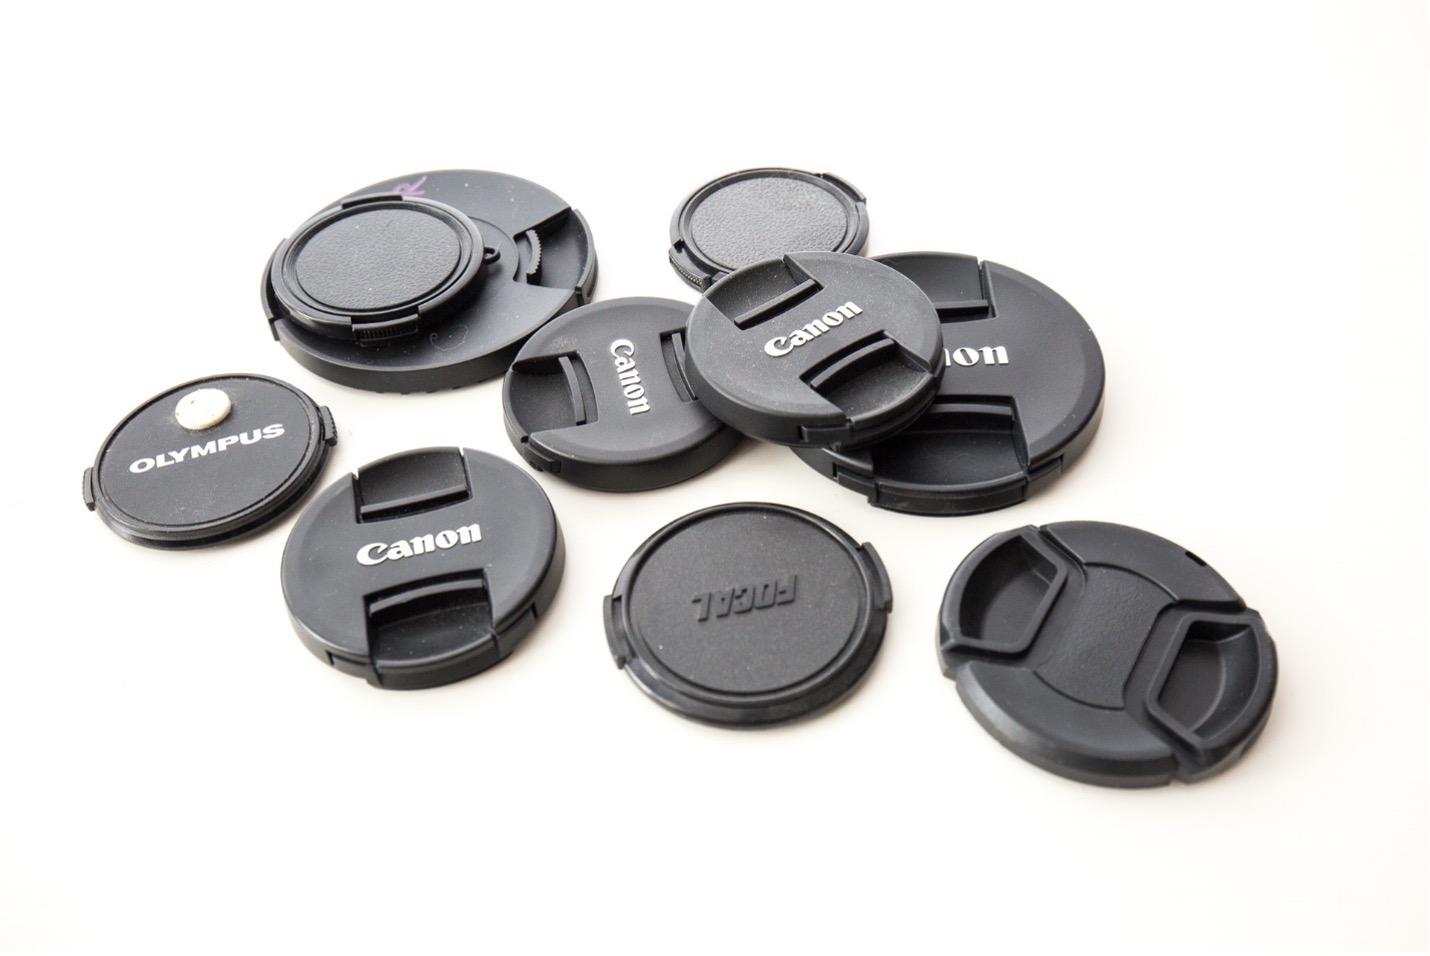 An assortment of lens caps